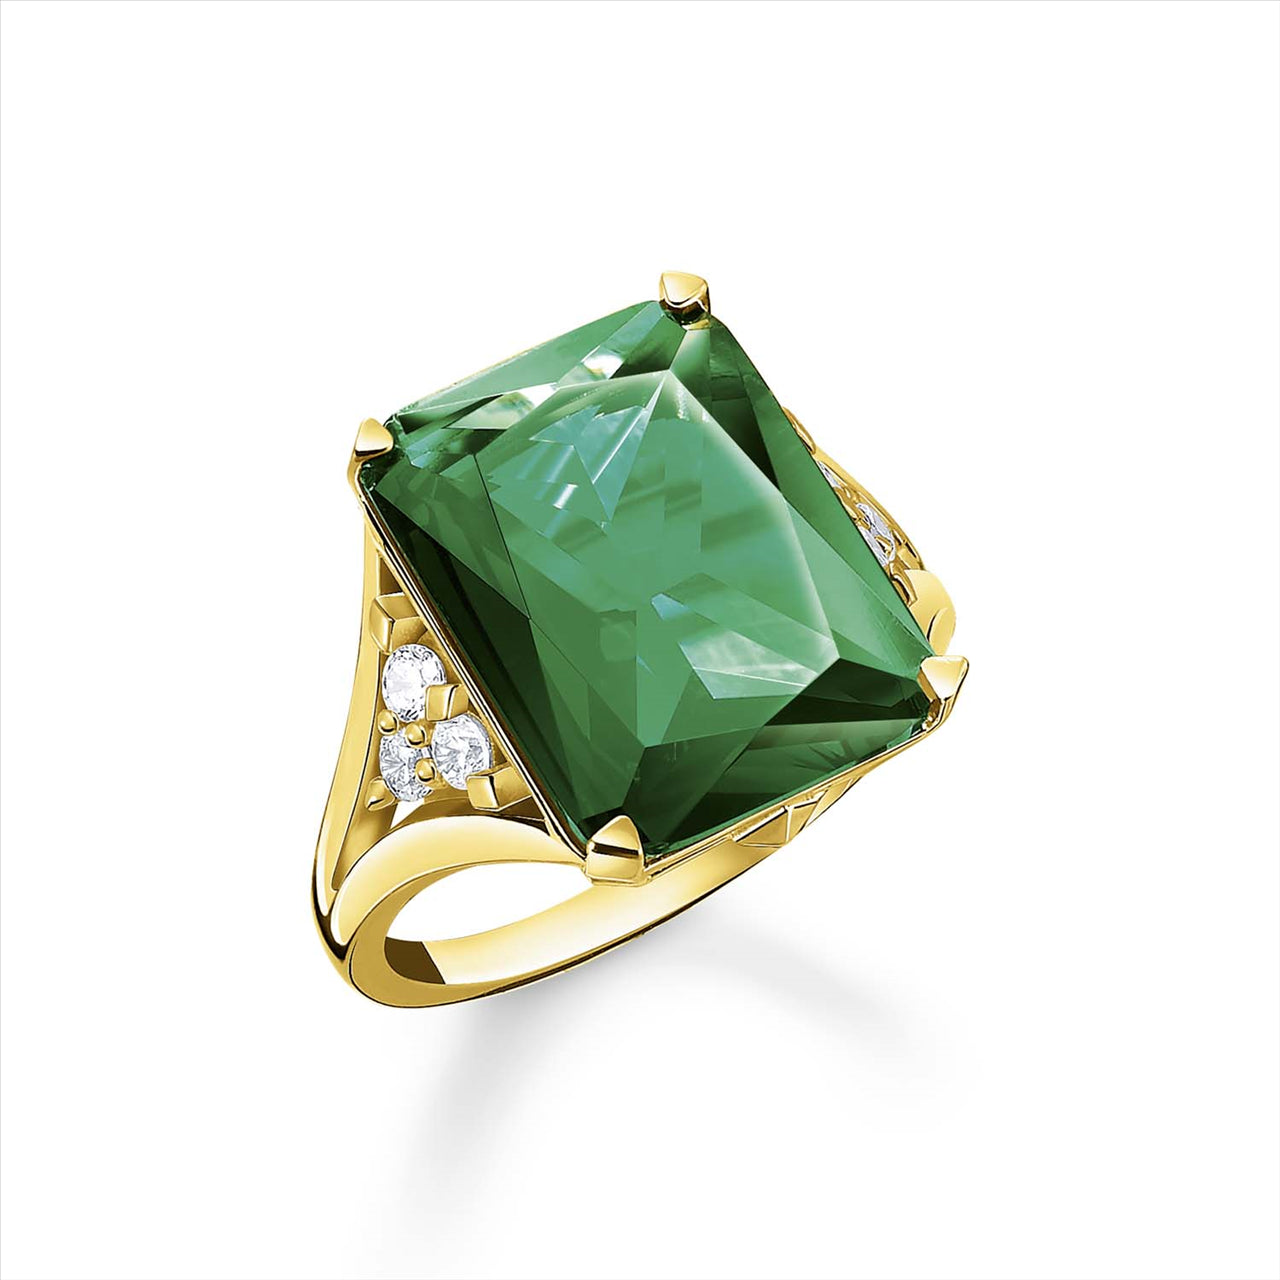 Thomas Sabo Magic Stones Green Yellow Gold Plated Ring